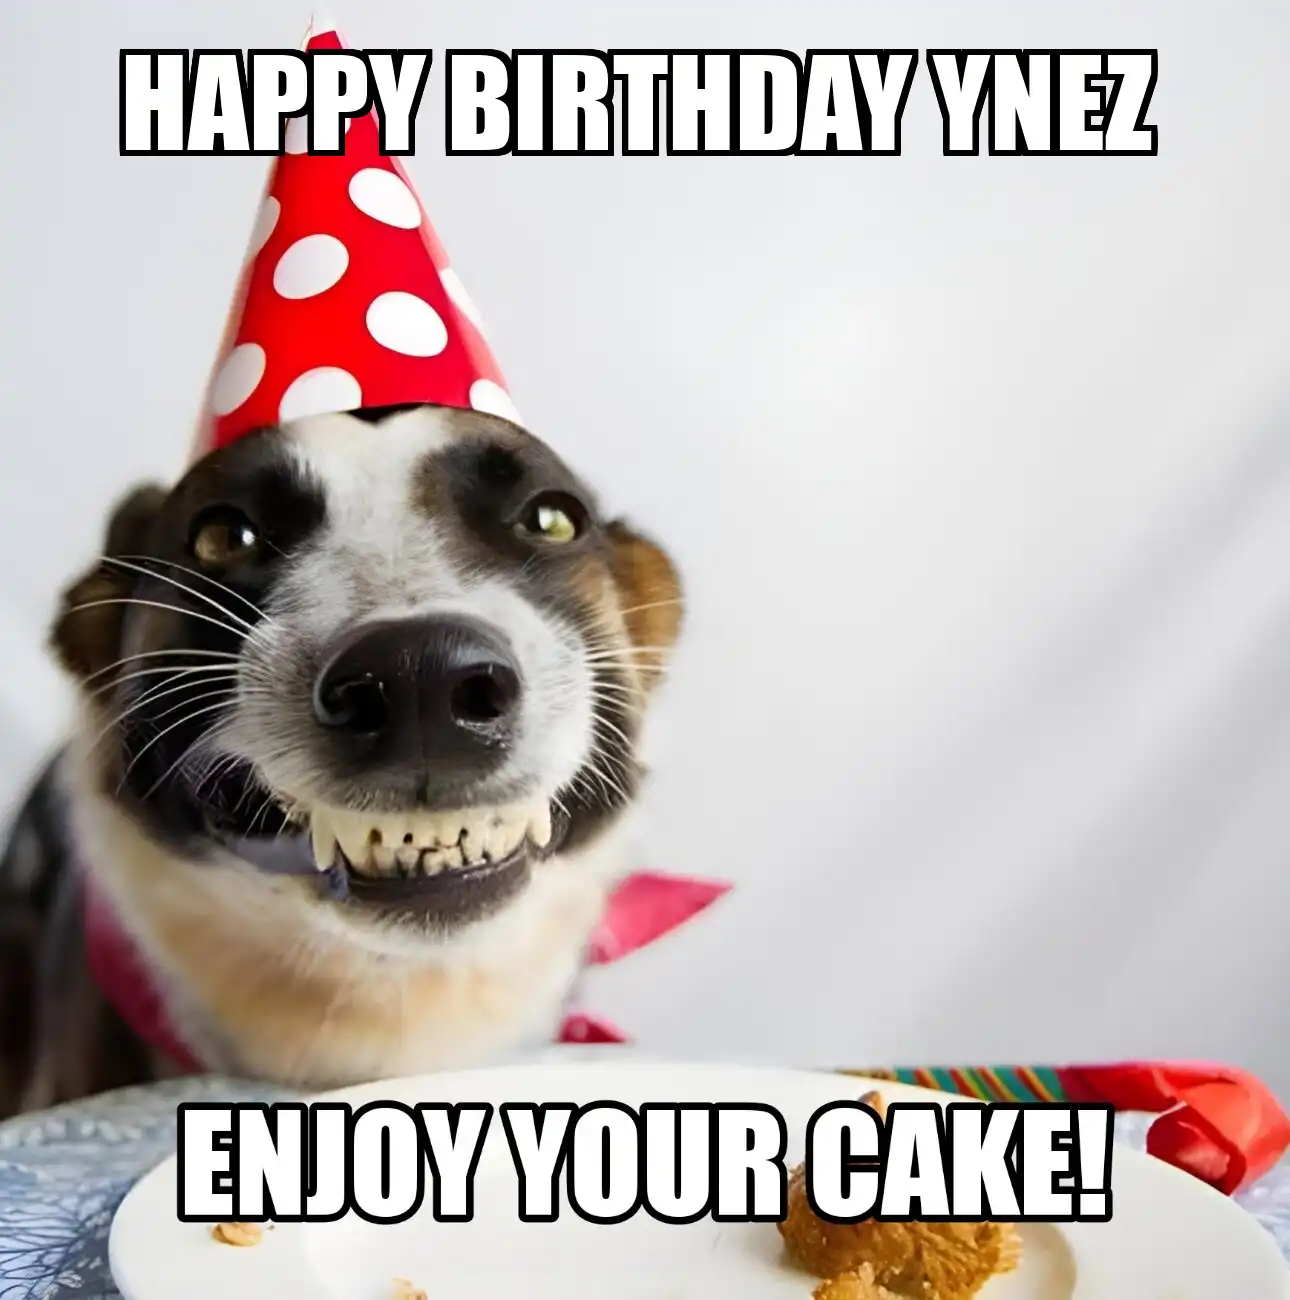 Happy Birthday Ynez Enjoy Your Cake Dog Meme